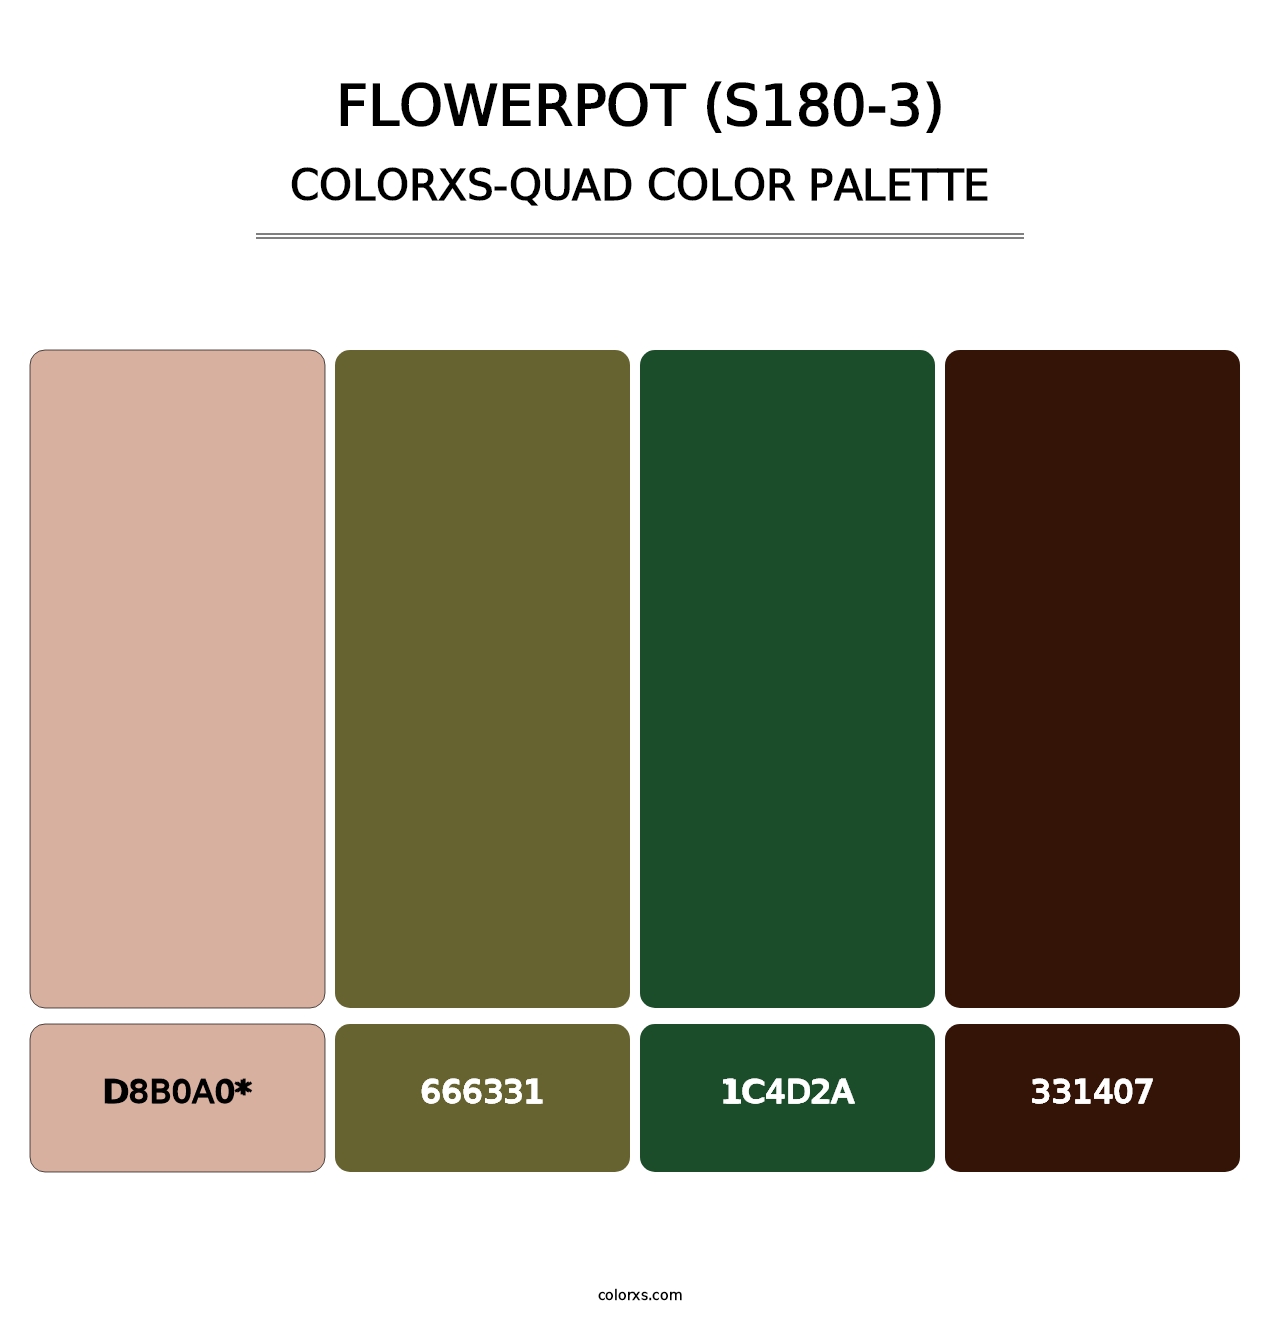 Flowerpot (S180-3) - Colorxs Quad Palette